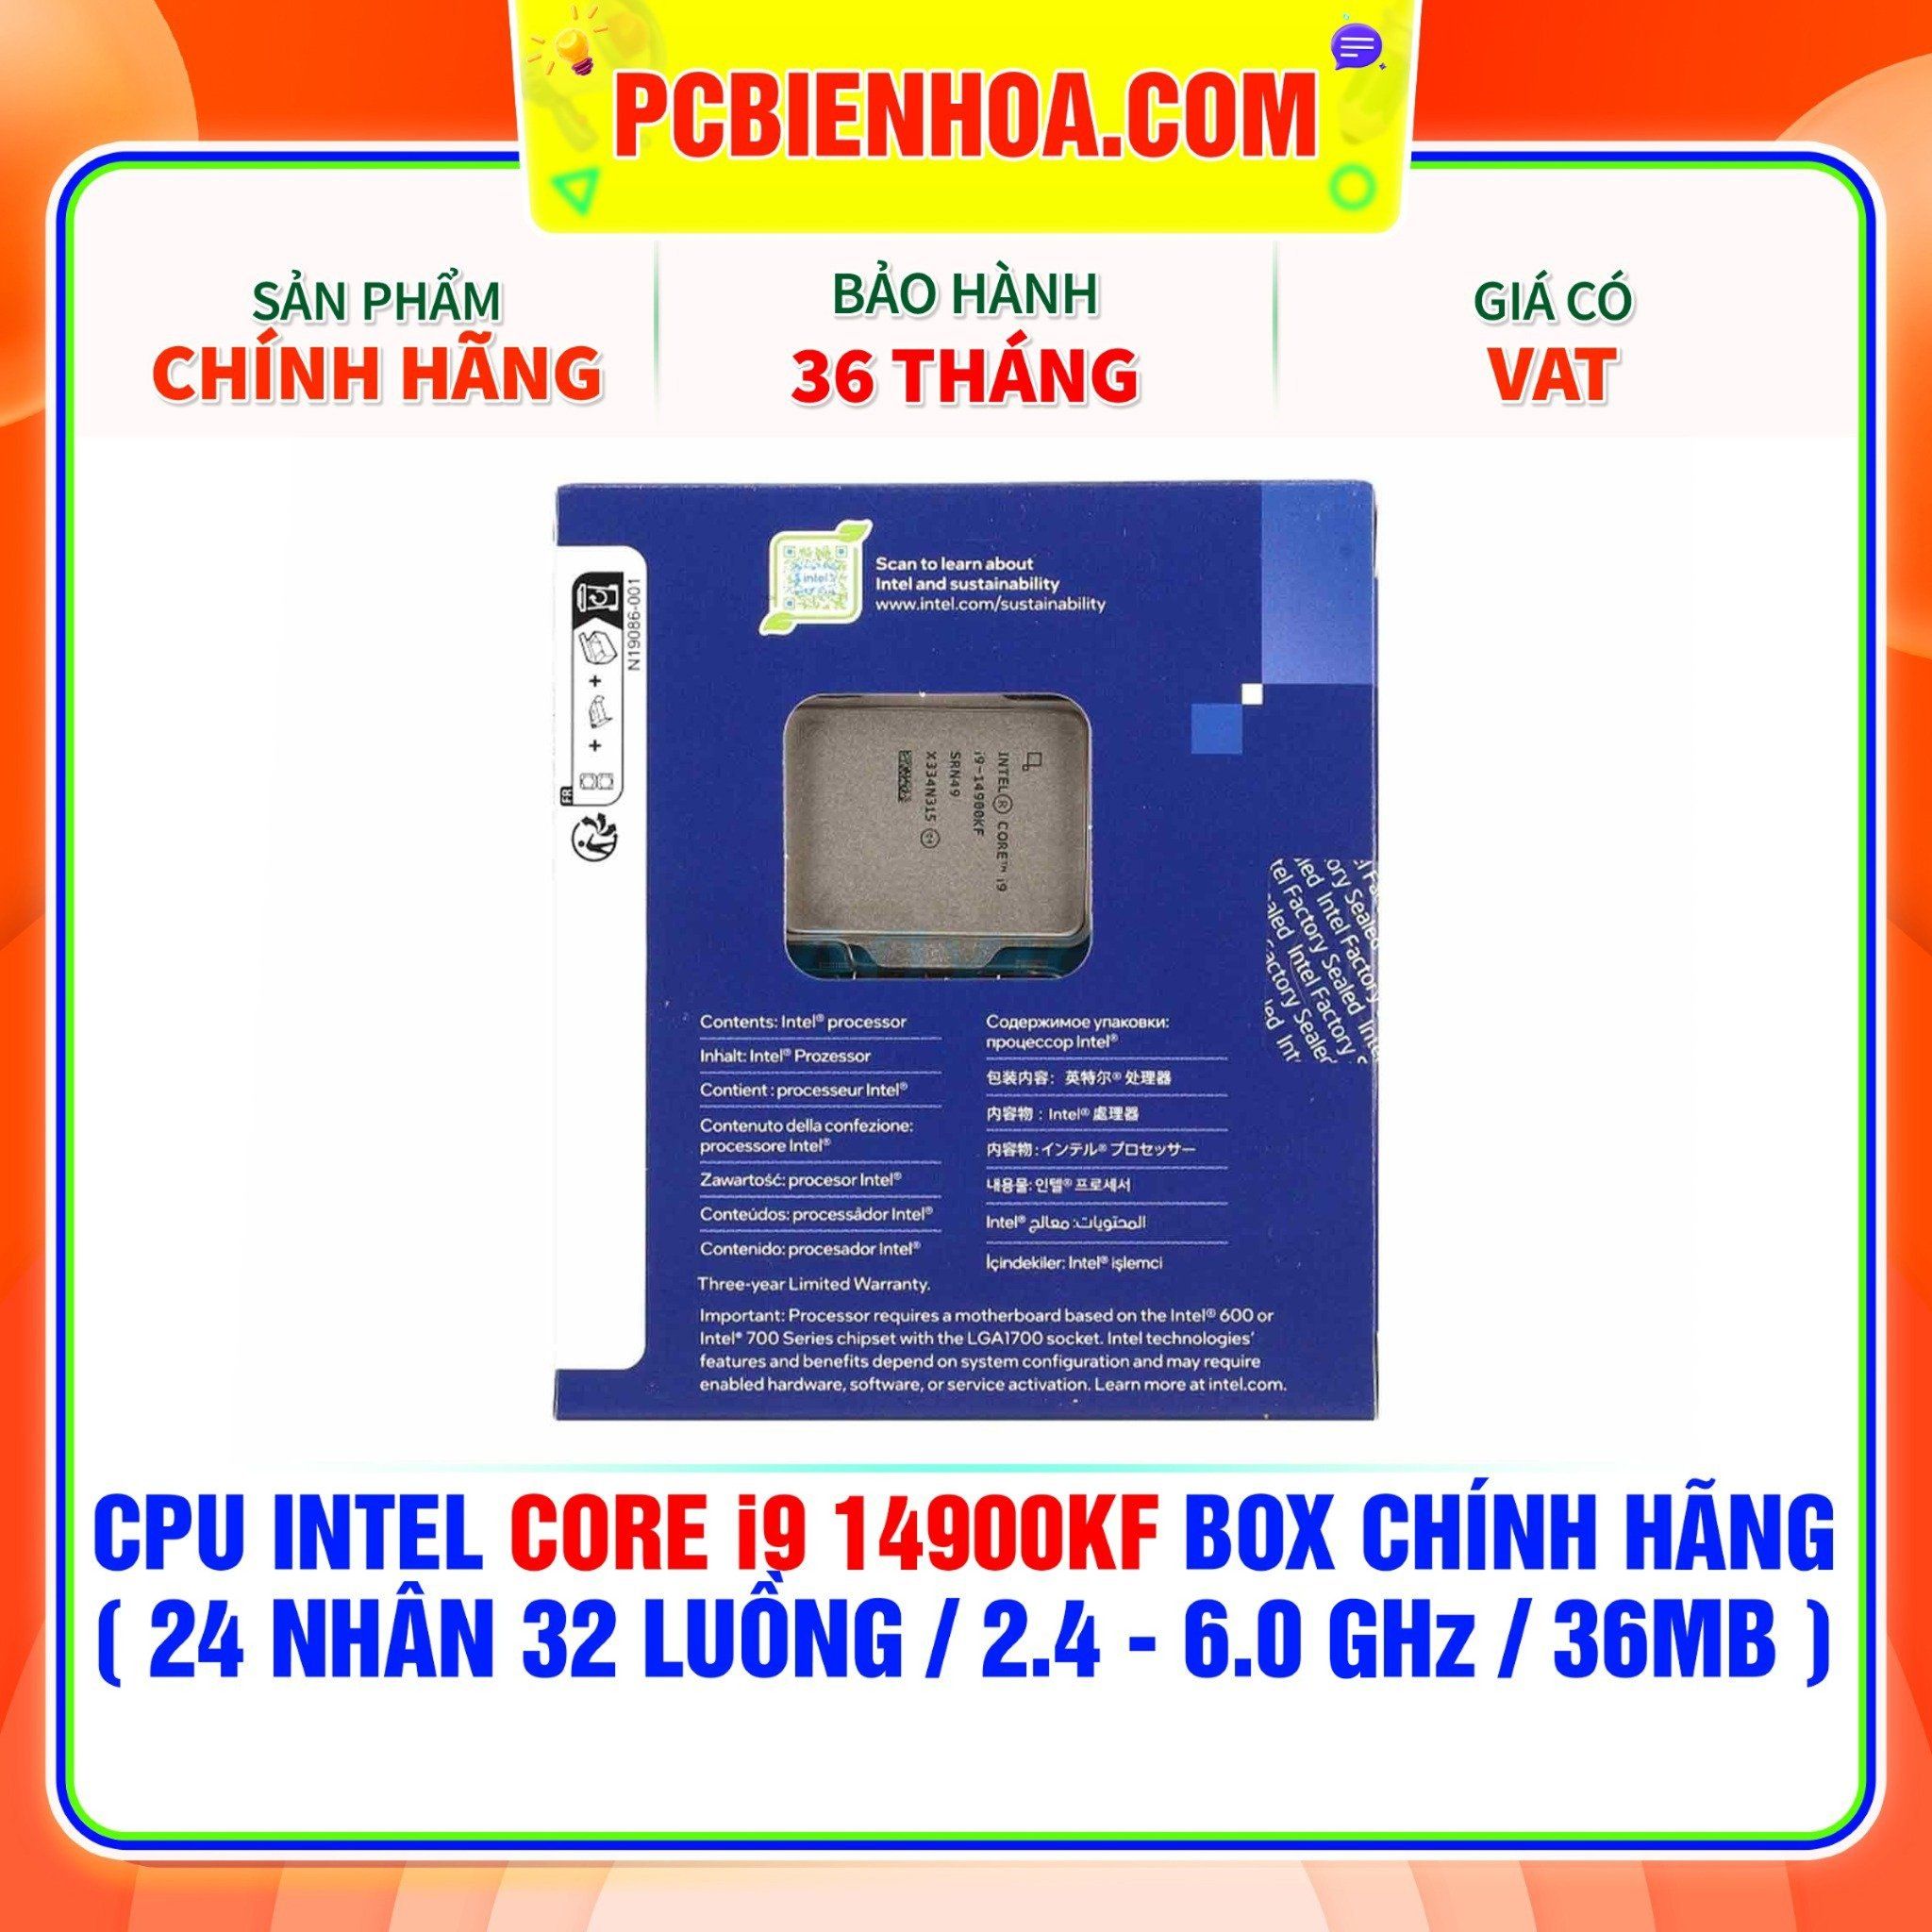  CPU Intel Core i9 14900KF BOX CHÍNH HÃNG ( 24 NHÂN 32 LUỒNG / 2.4 - 6.0 GHz / 36MB ) 